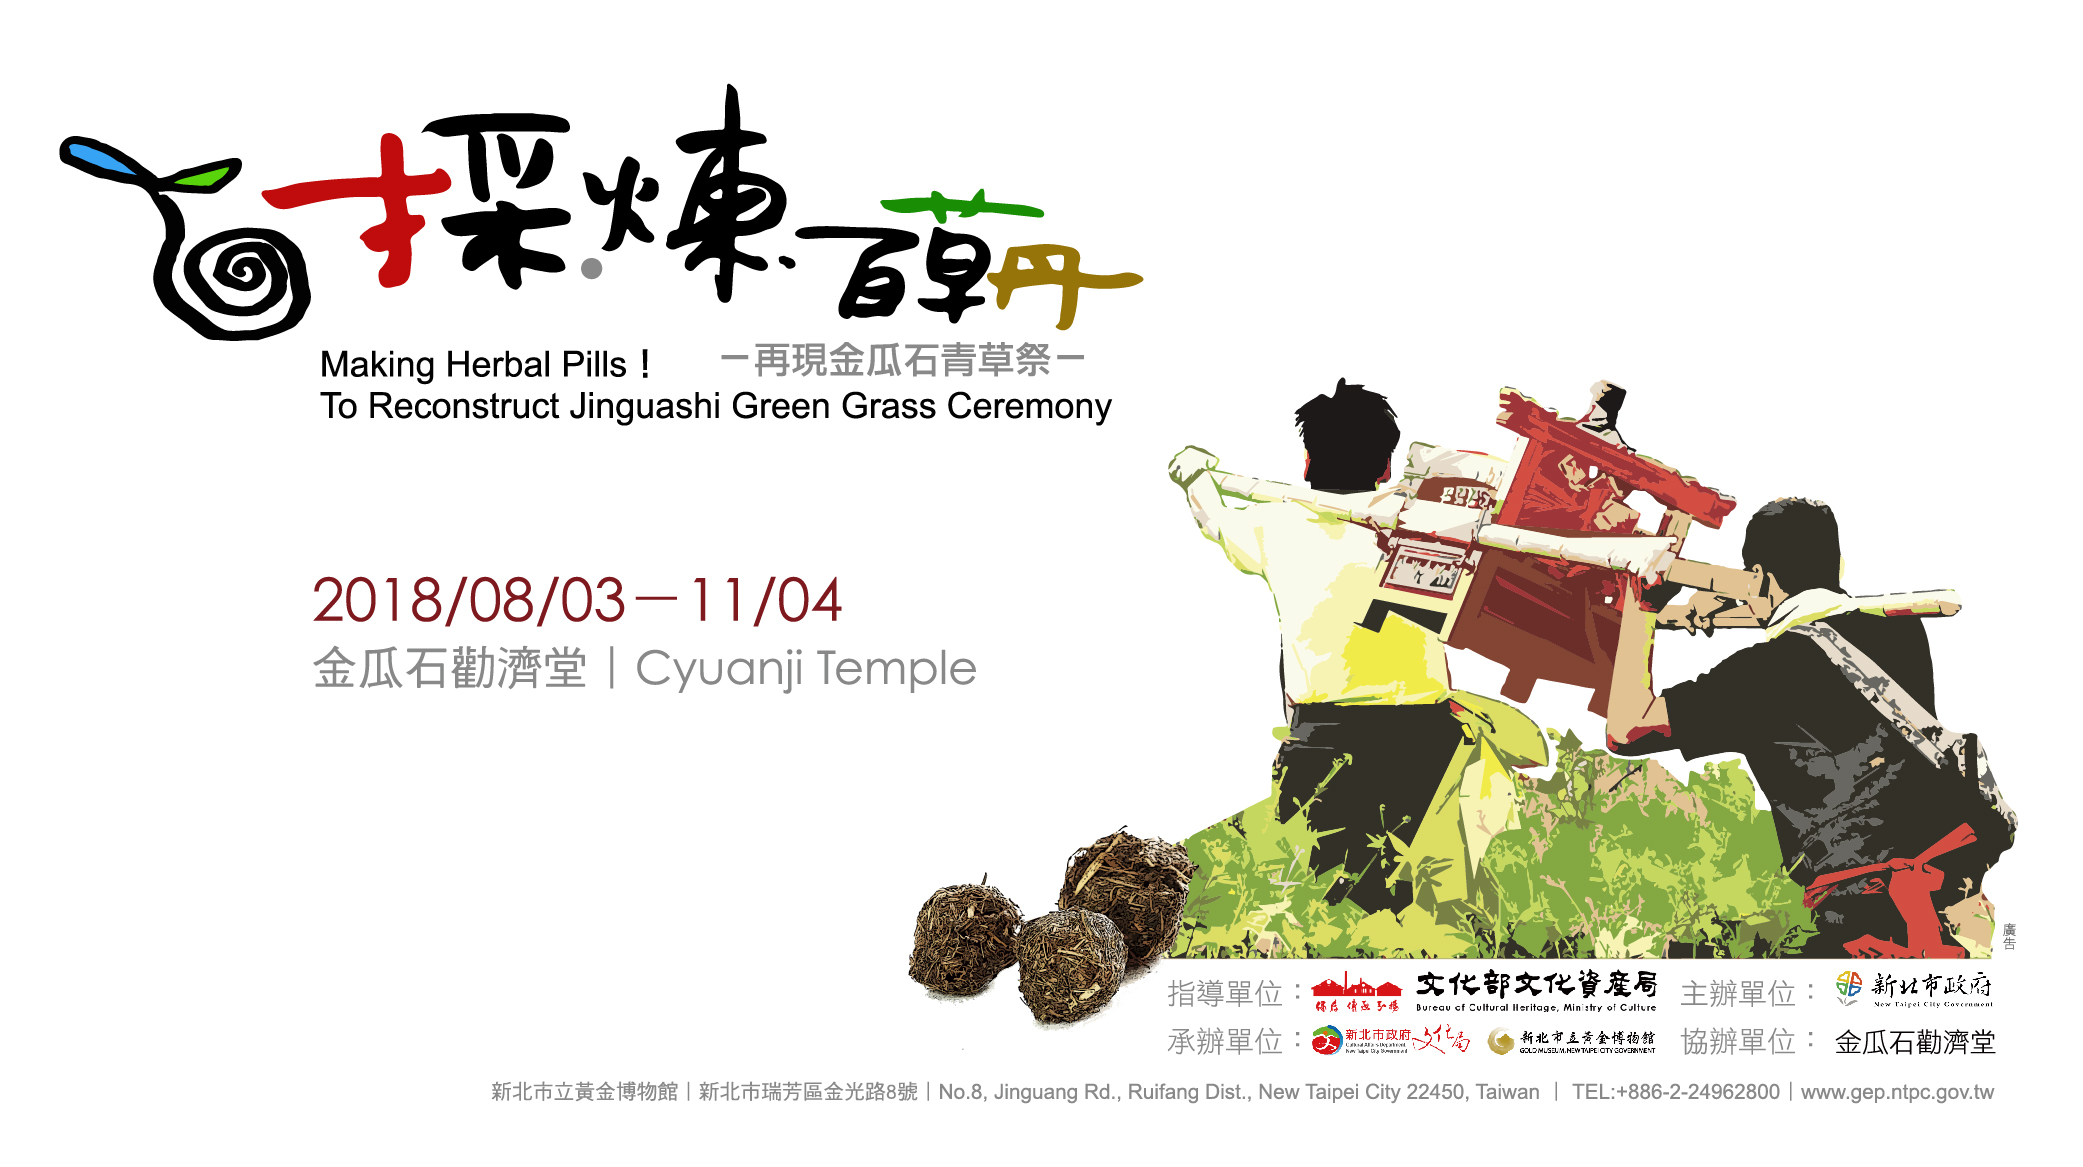 Собирая сто трав - обналичите фестиваль дыни и каменной травы - визуальный образ